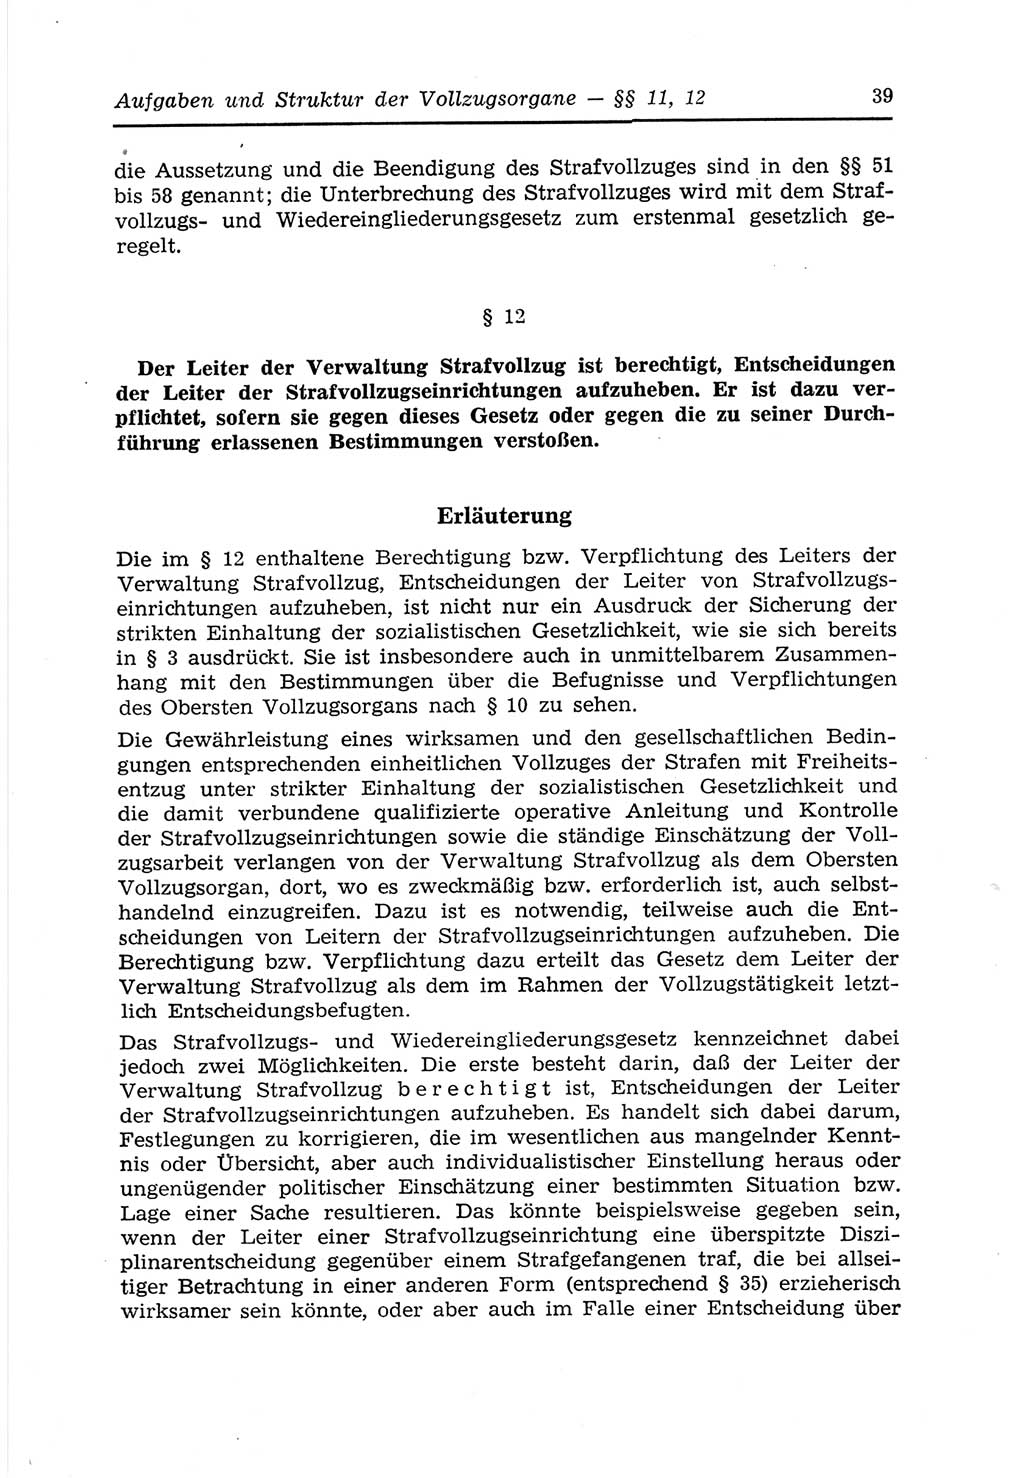 Strafvollzugs- und Wiedereingliederungsgesetz (SVWG) der Deutschen Demokratischen Republik (DDR) 1968, Seite 39 (SVWG DDR 1968, S. 39)